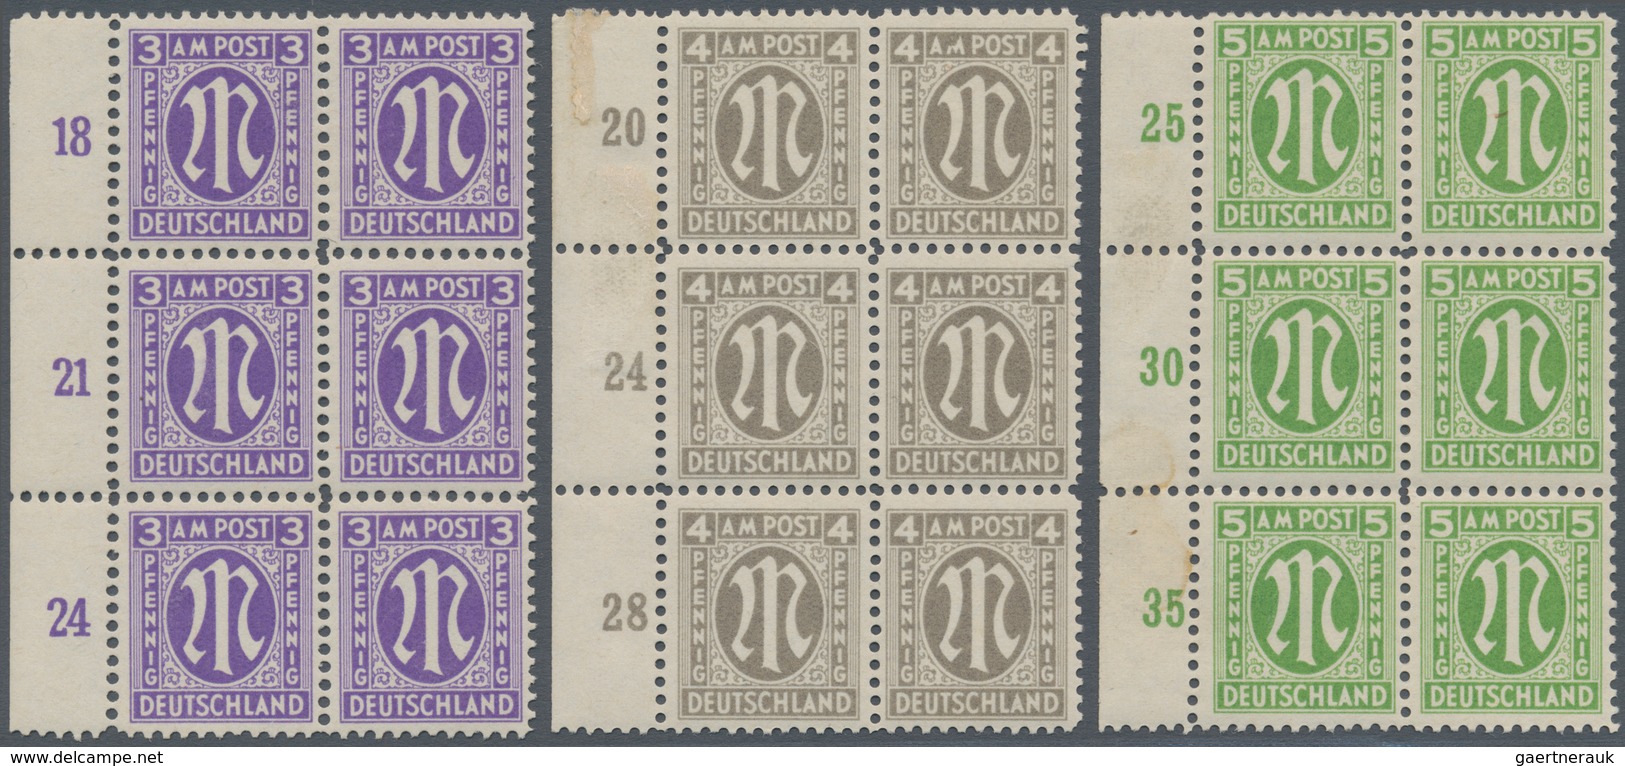 Bizone: 1945, AM-Post Deutscher Druck, Probedrucke auf Papier x (Farbe im UV-Licht abweichend) gez.